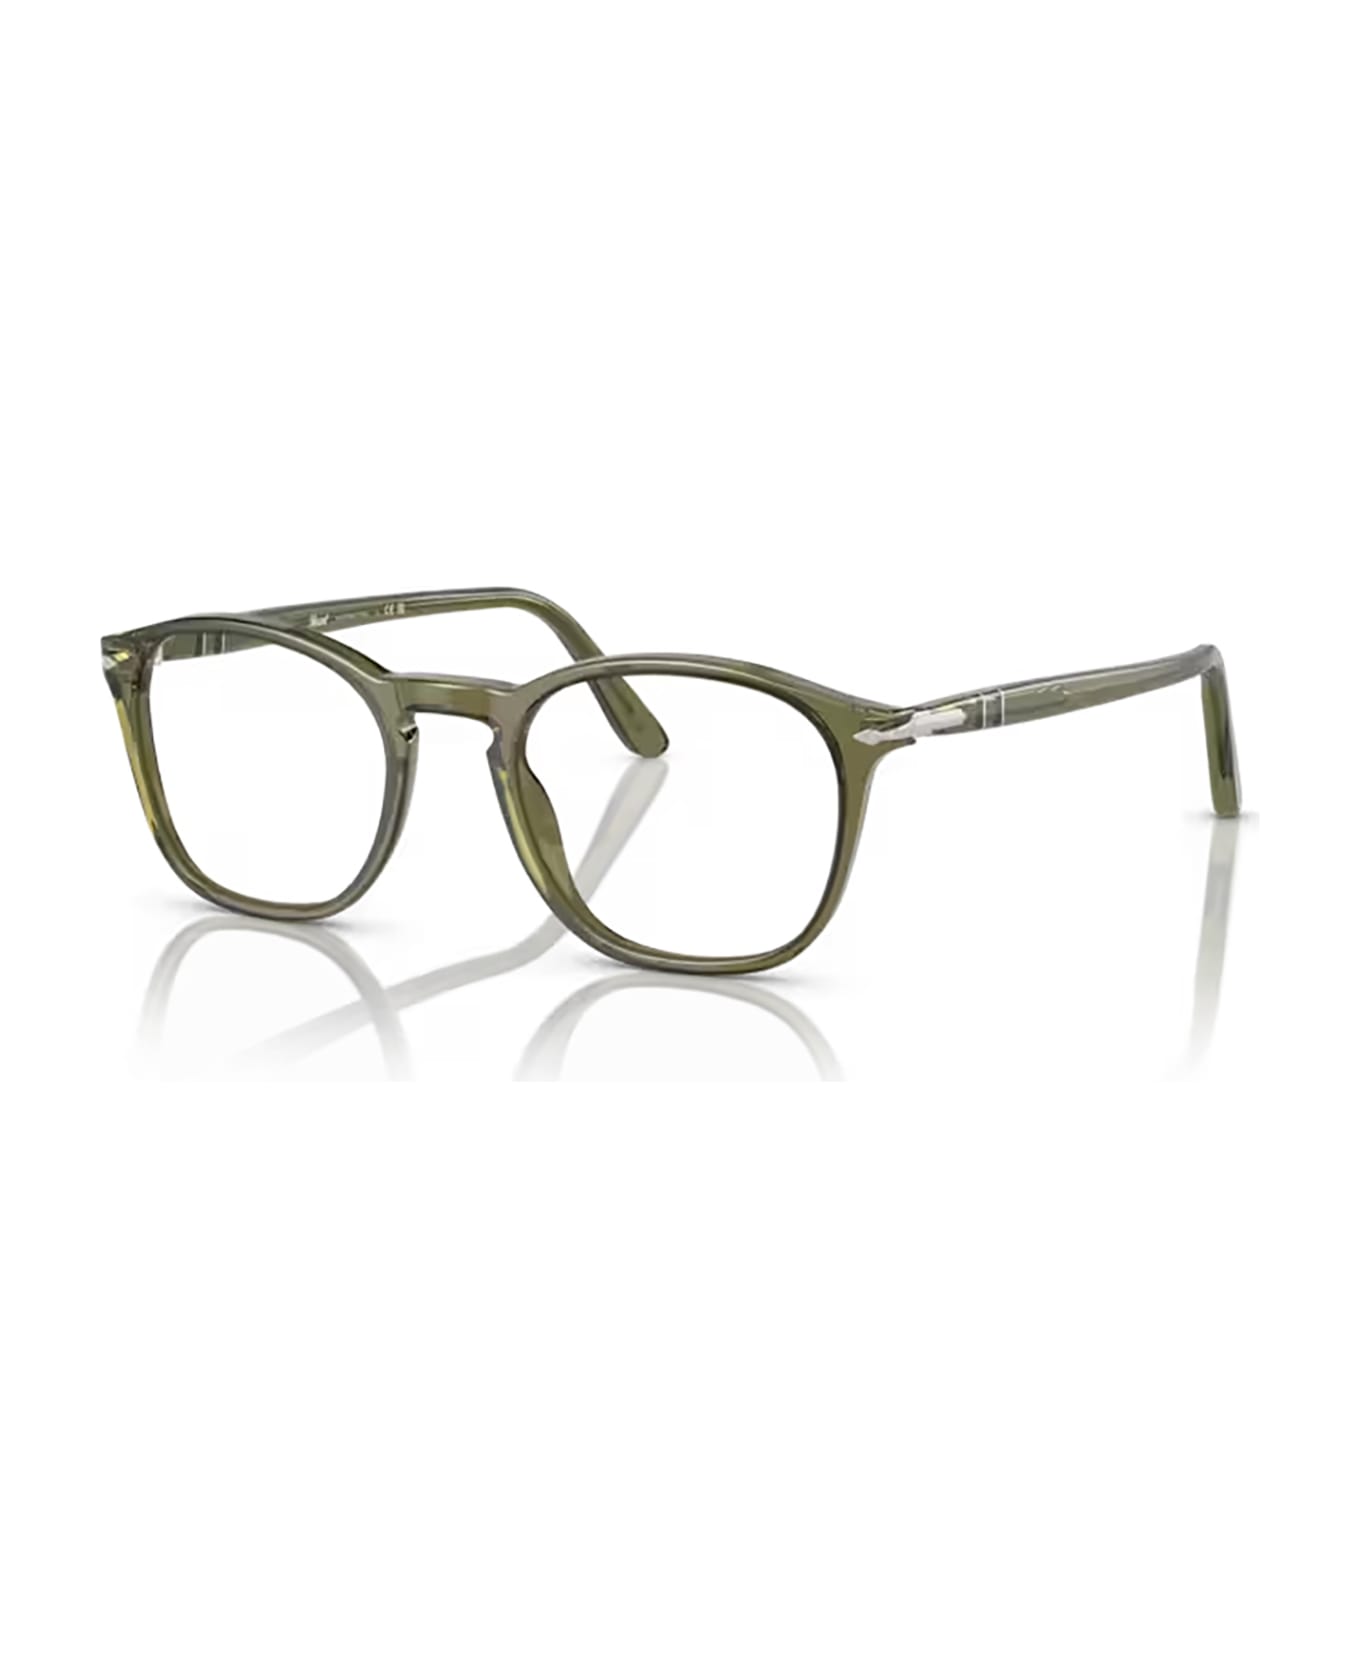 Persol Po3007v Olive Transparent Glasses - Olive Transparent